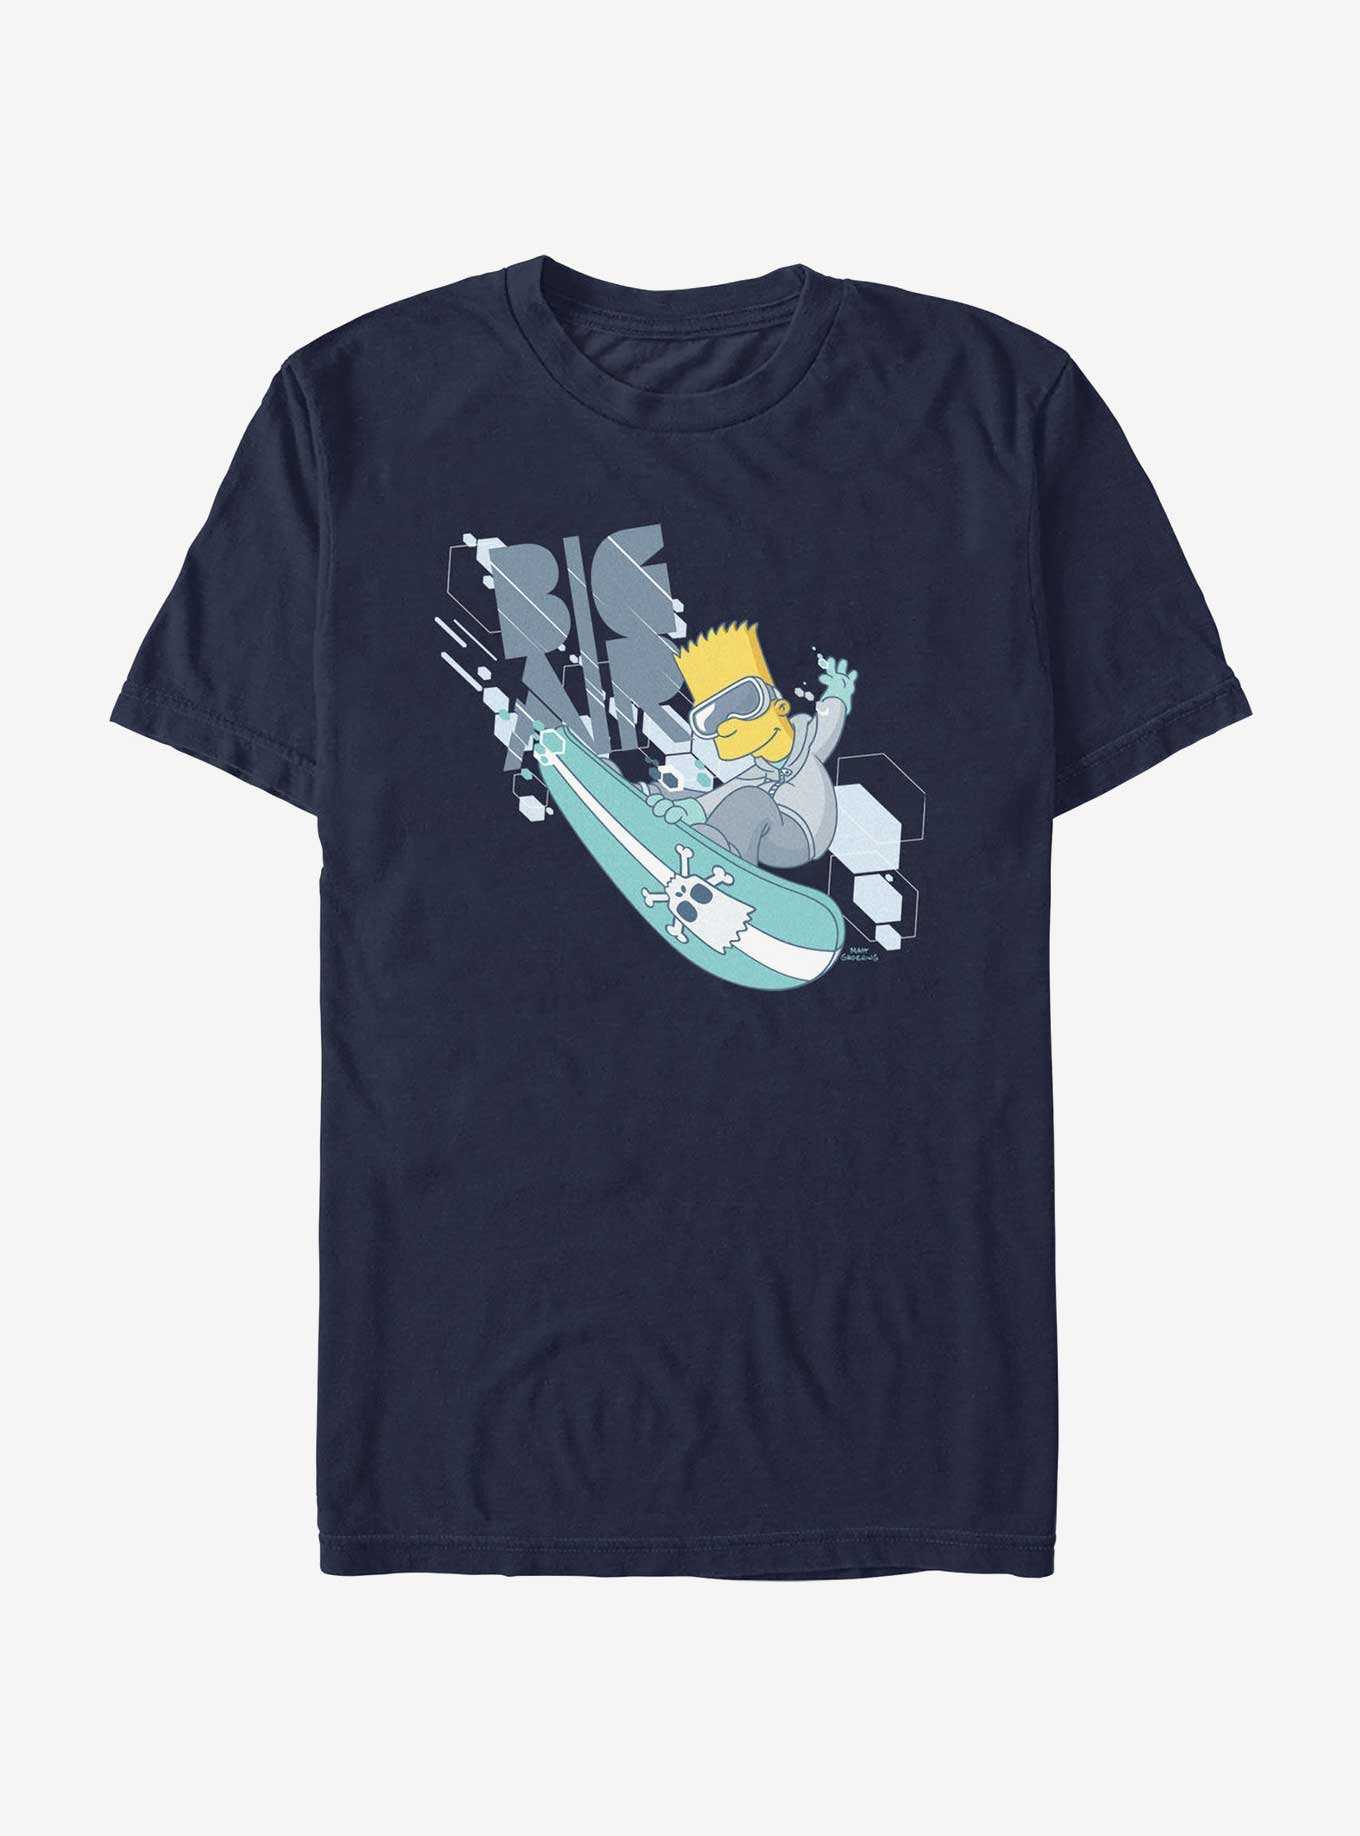 The Simpsons Big Air Bart T-Shirt, , hi-res